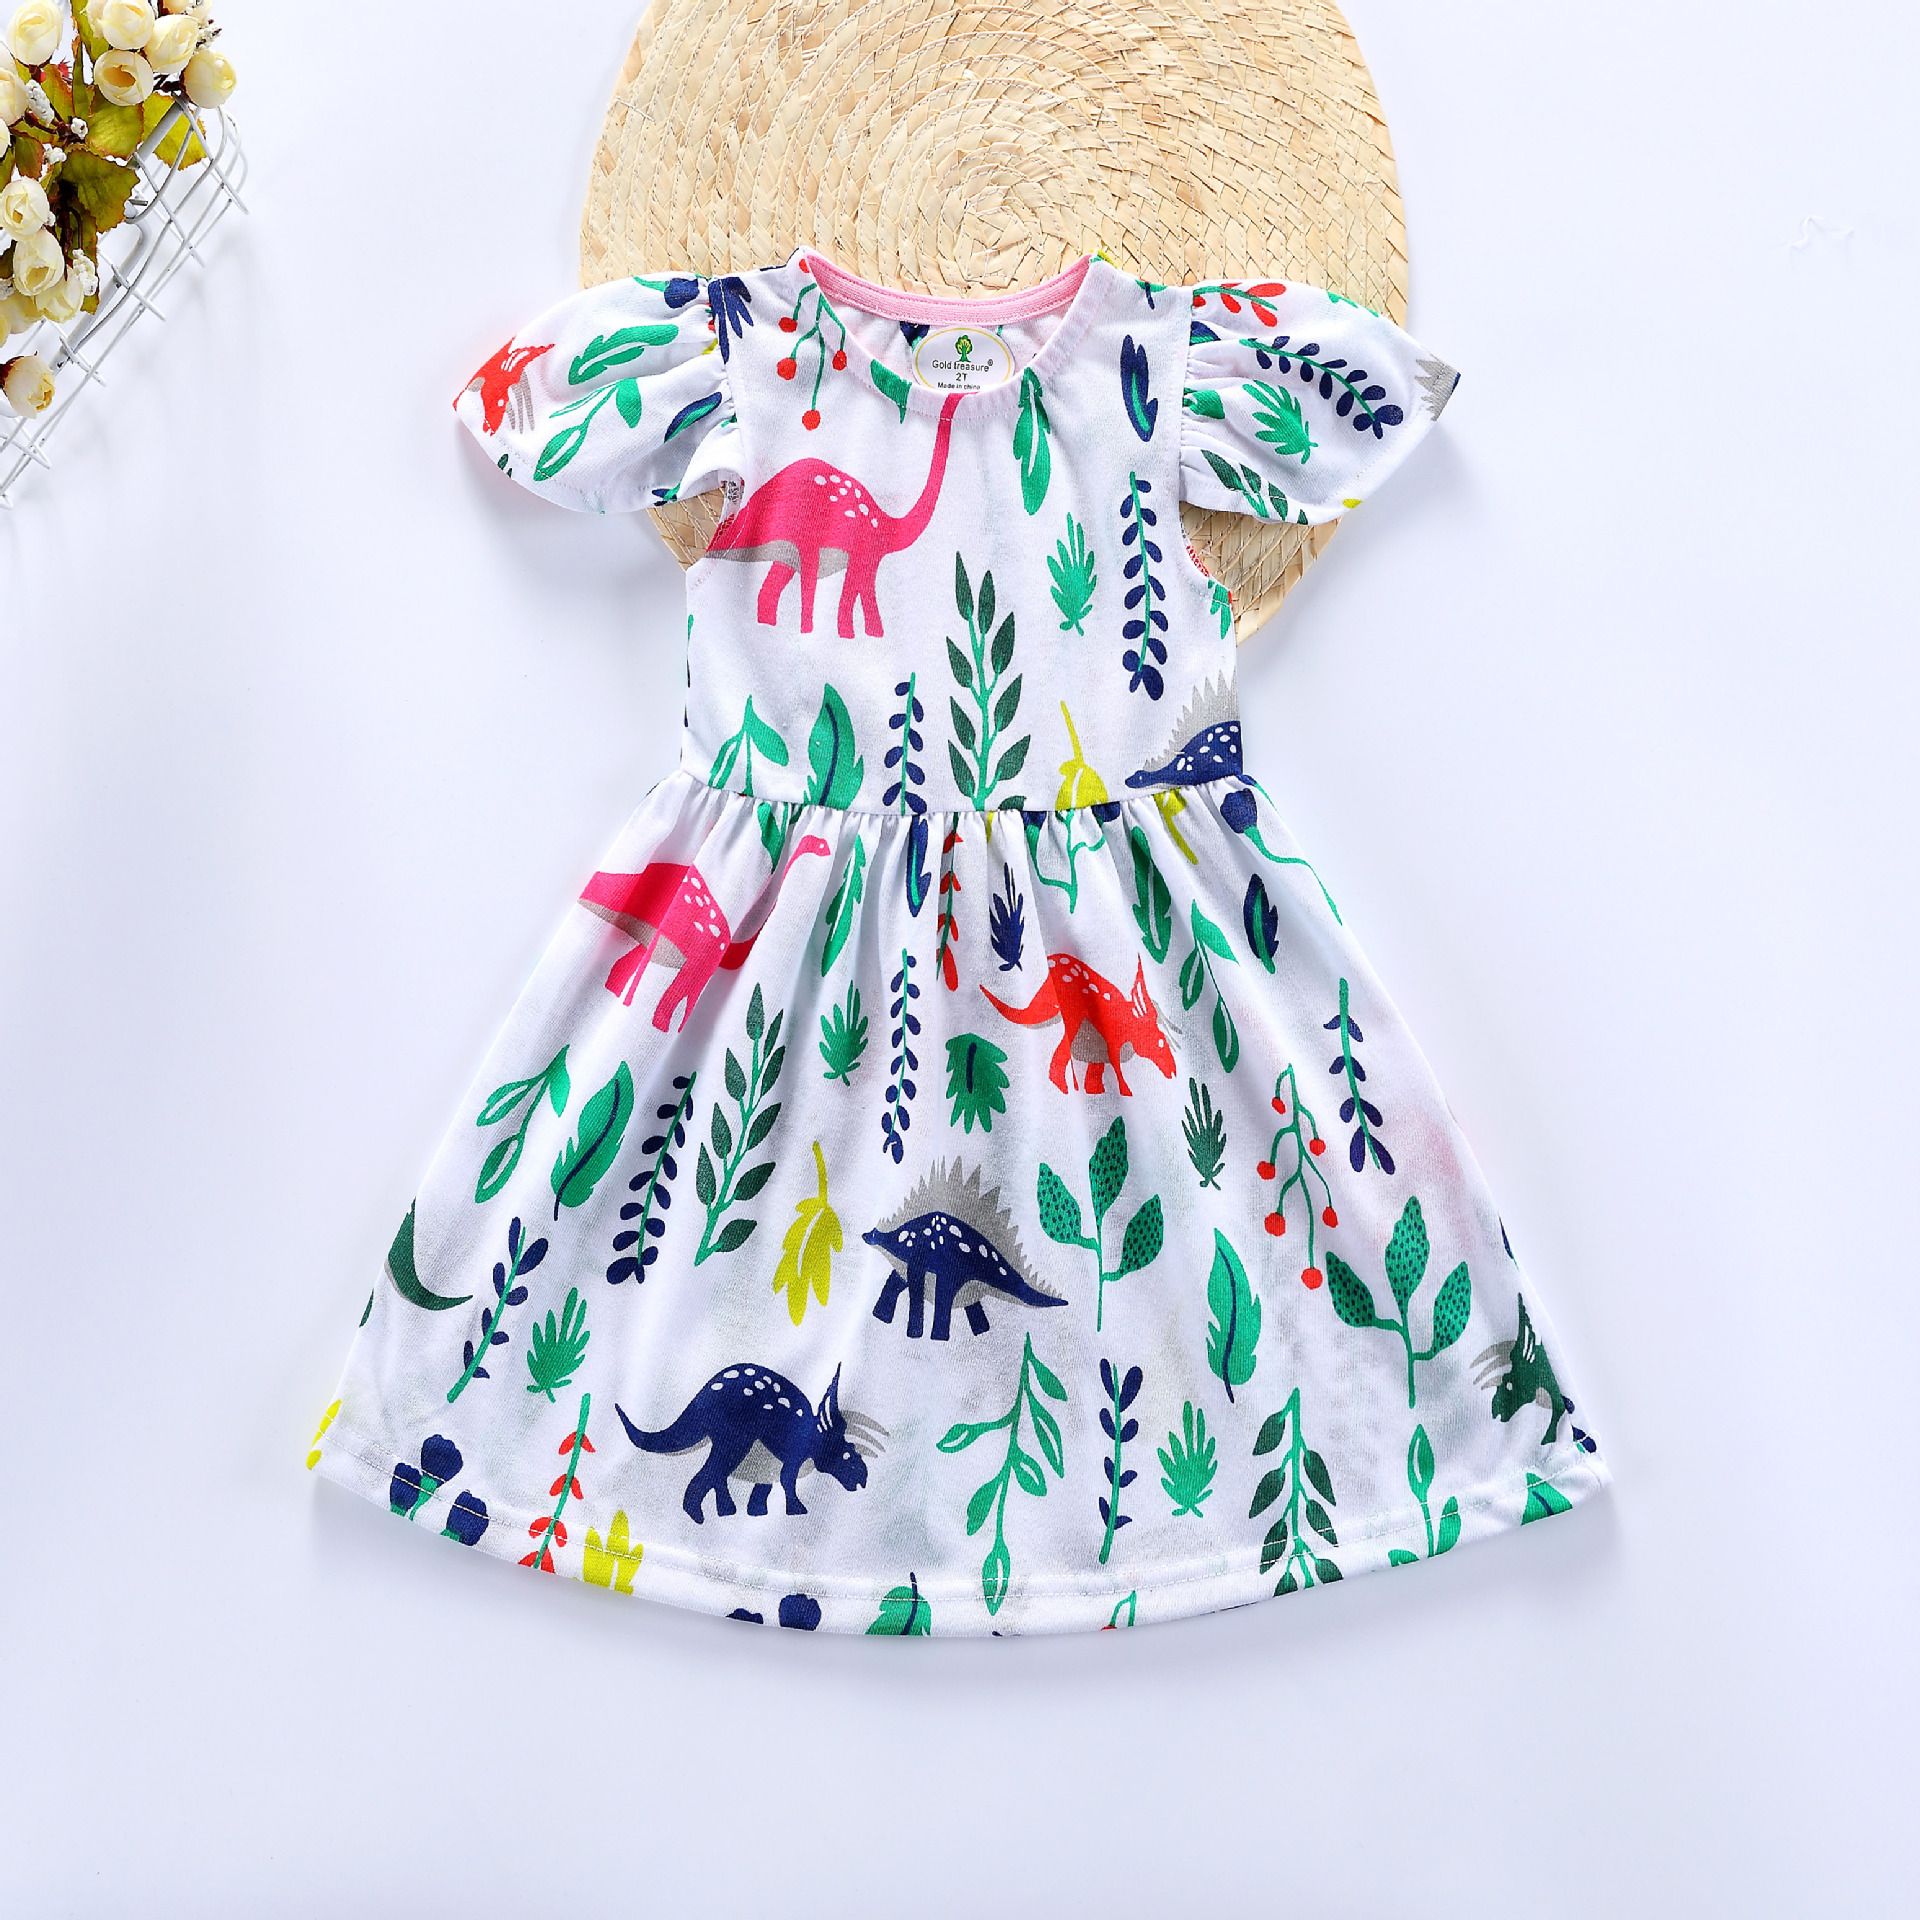 Winsummer Girls Cotton Fox Pattern Casual Long Sleeve Cartoon Princess Dress Summer Dress 